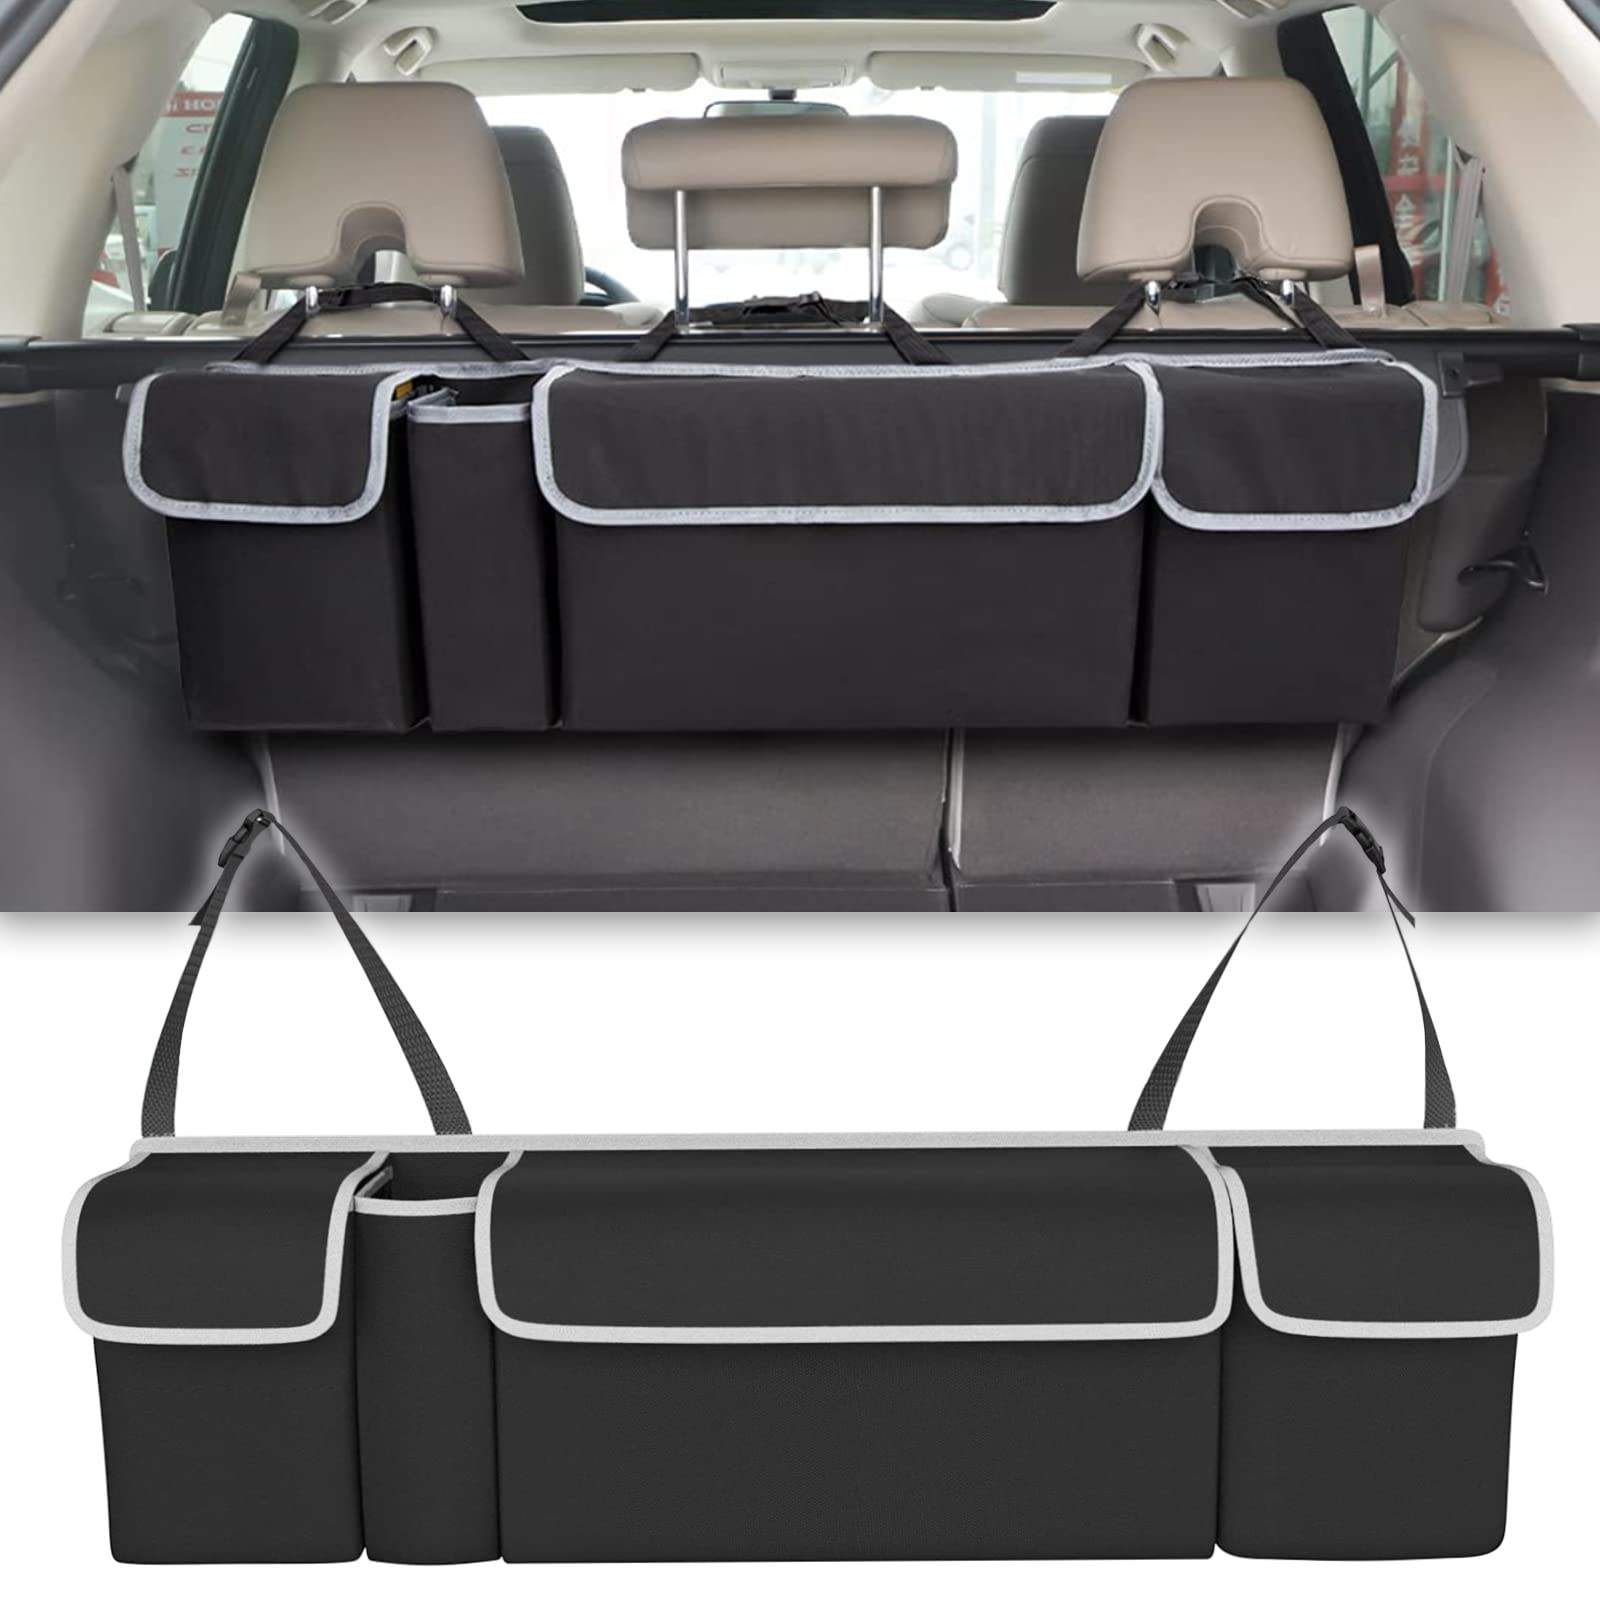 Organizador trasero de coche impermeable multifuncional con 4 bolsillos de almacenamiento plegable para colgar bebidas organizador de maletero de coche